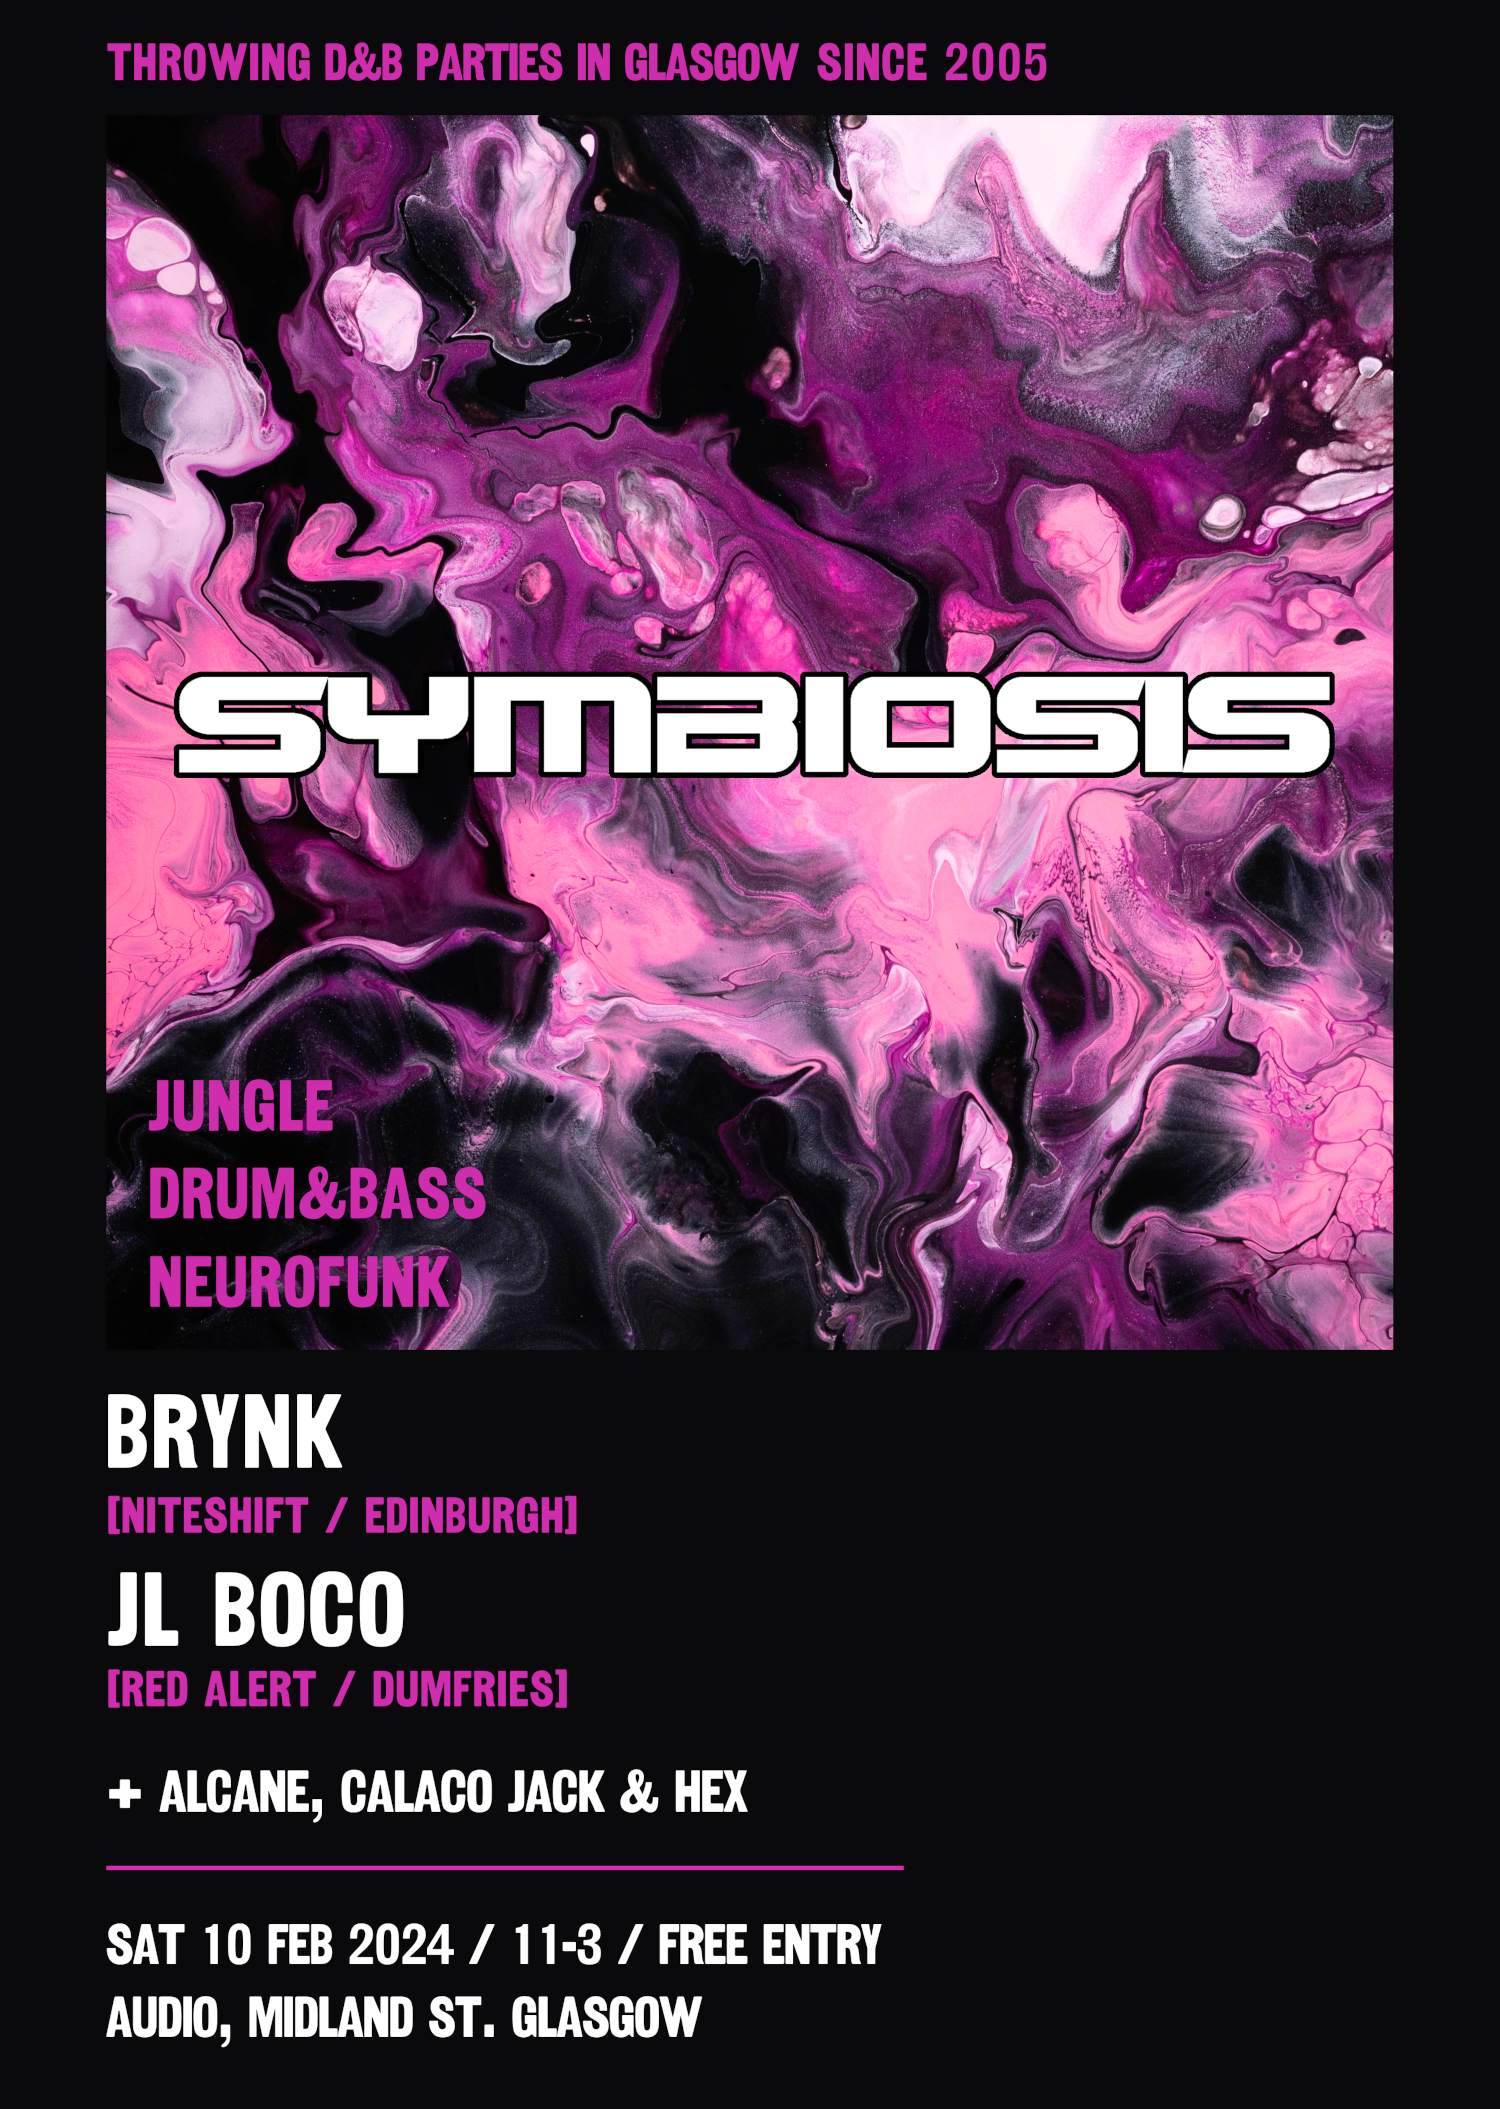 Symbiosis - Brynk & JL Boco - Página frontal